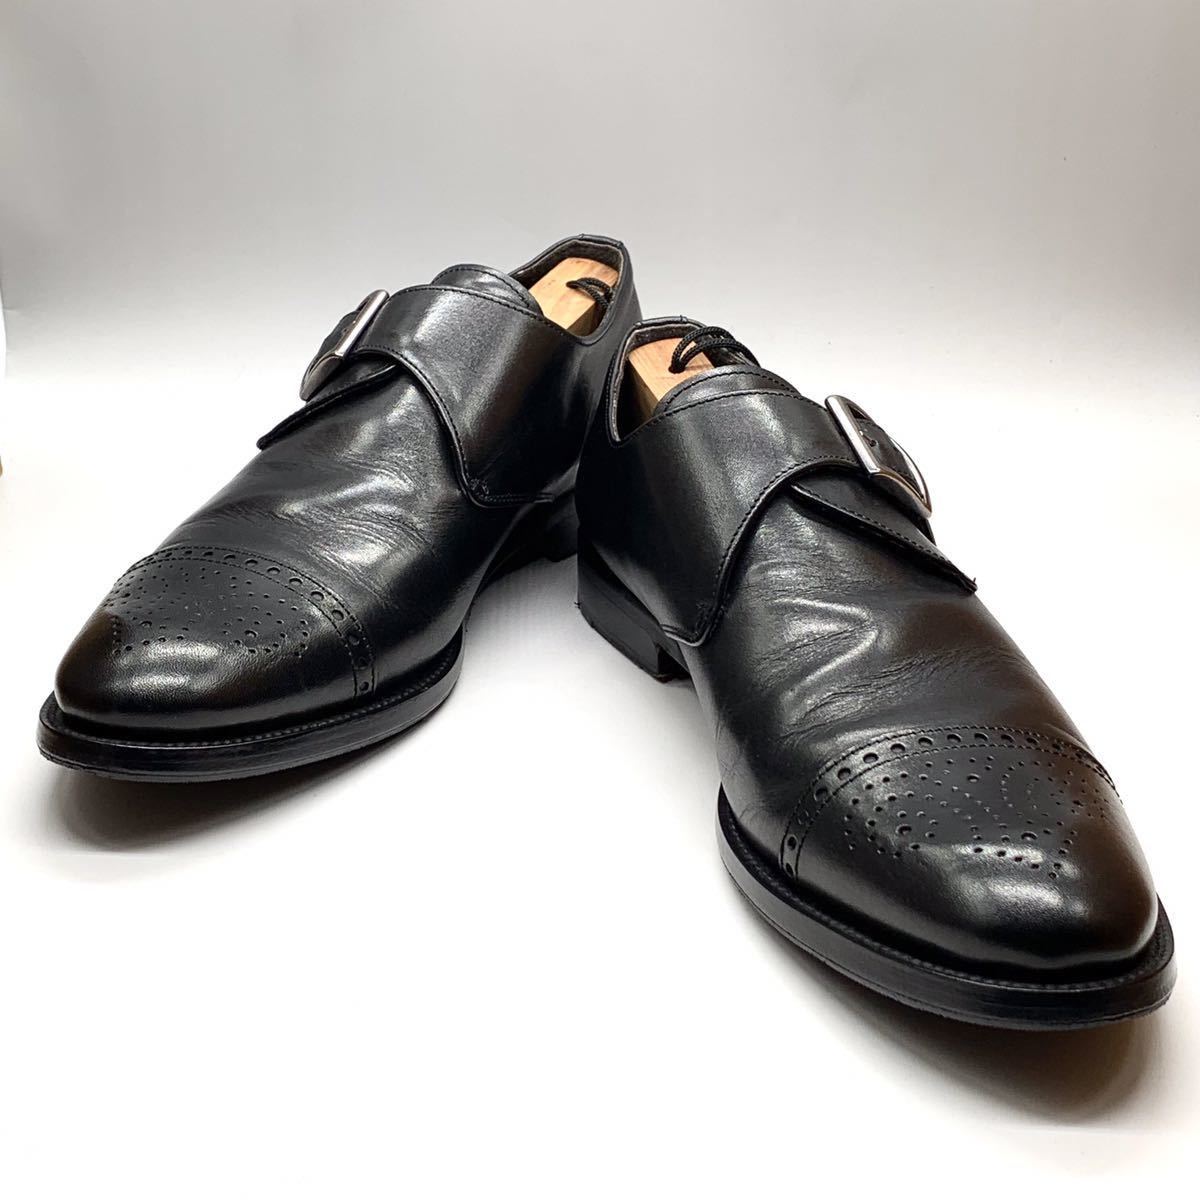 CERBERO (チェルベロ) ドレスシューズ パンチドキャップトゥ モンクストラップ レザー ブラック 黒 UK9 27.5cm 革靴 ビジネス イタリア製